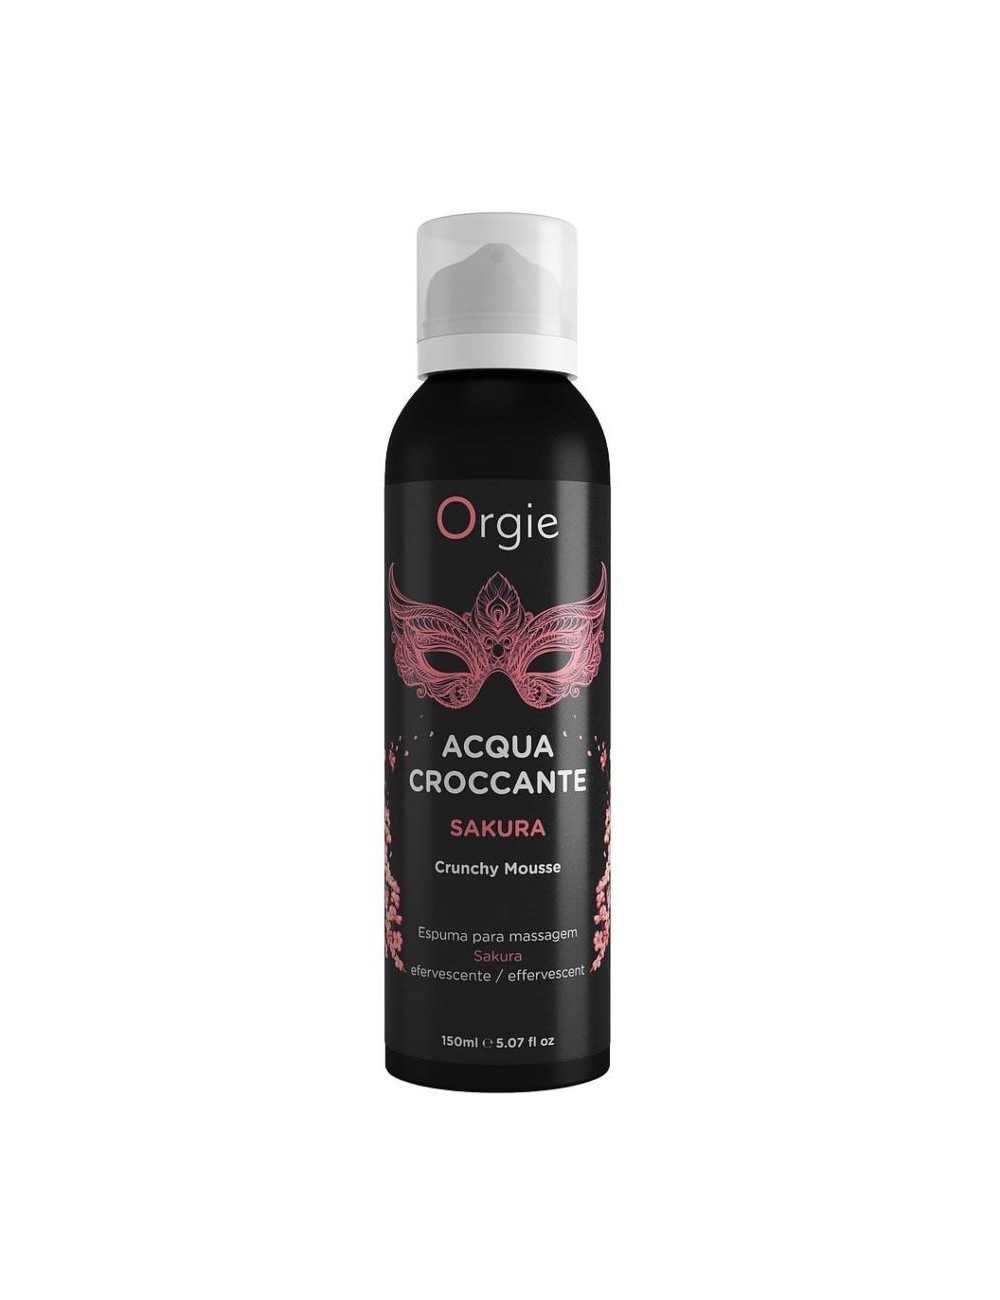 Orgie mousse hydratante effervescente sakura scent 150 ml - Huiles de massage - Orgie